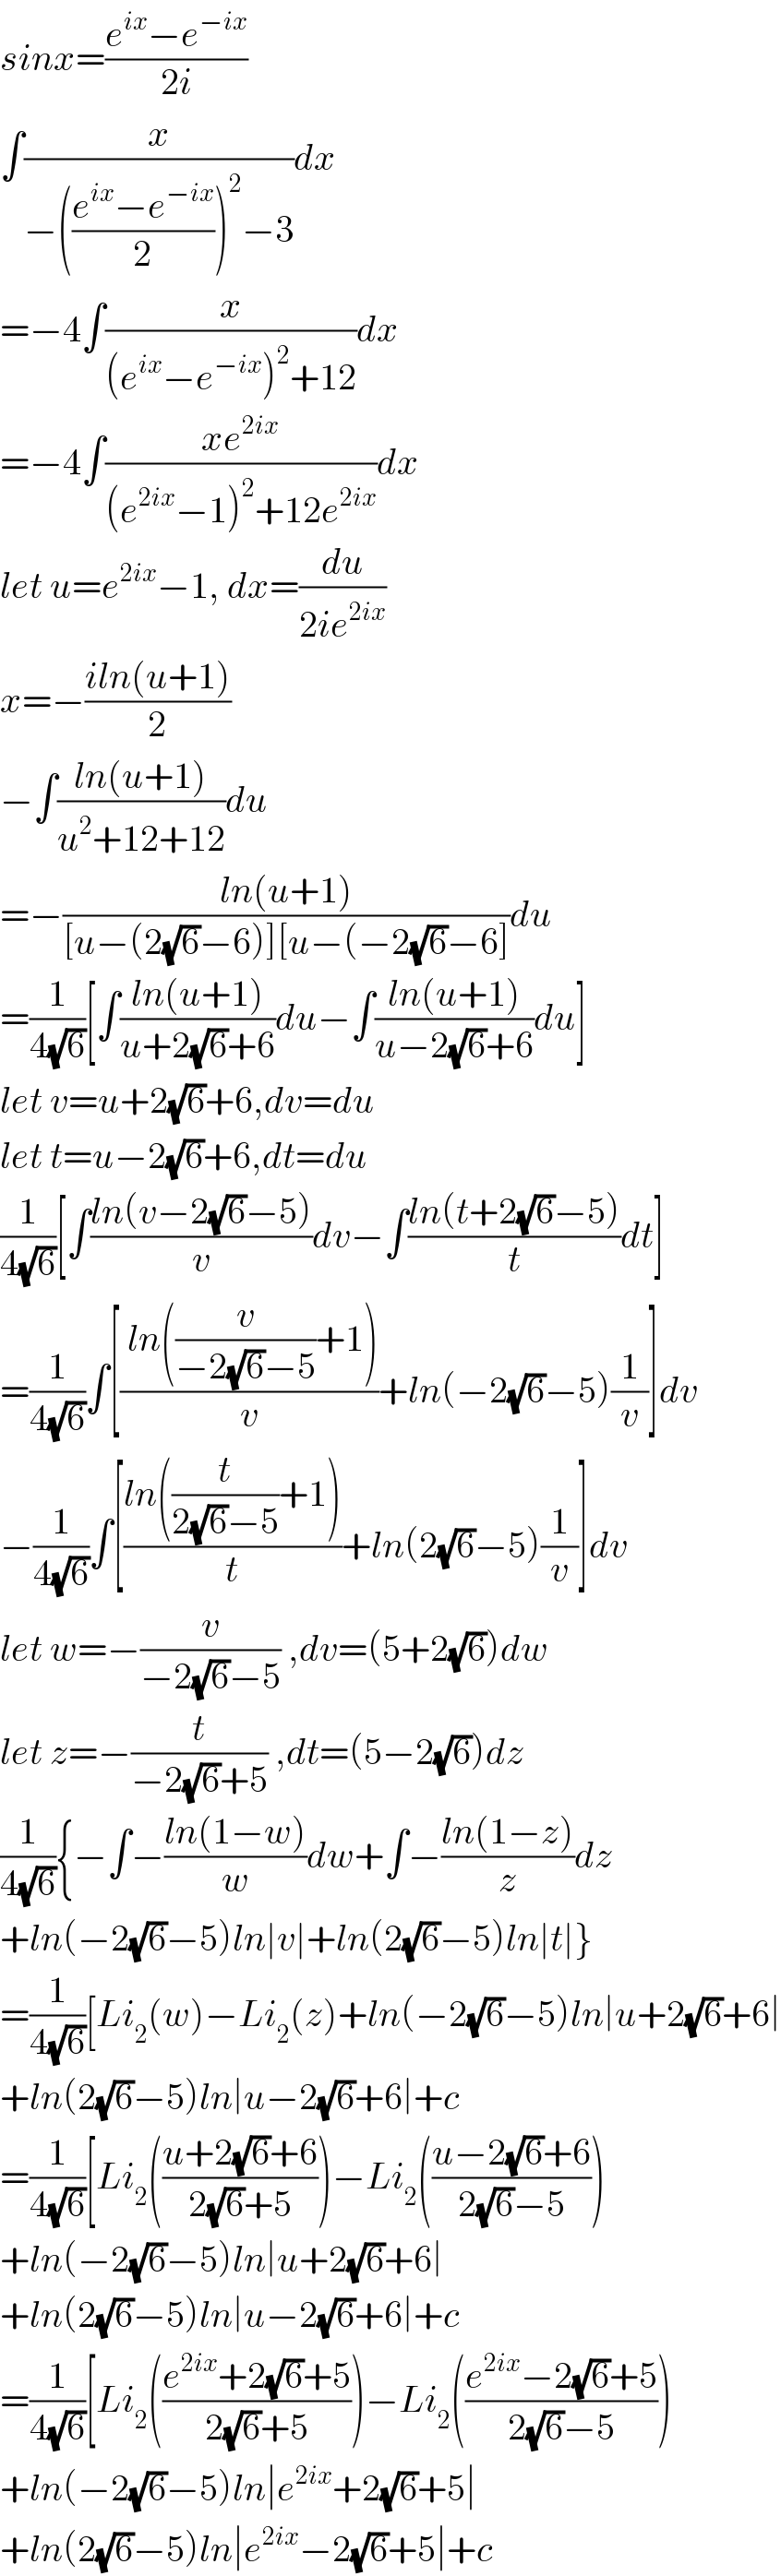 sinx=((e^(ix) −e^(−ix) )/(2i))  ∫(x/(−(((e^(ix) −e^(−ix) )/2))^2 −3))dx  =−4∫(x/((e^(ix) −e^(−ix) )^2 +12))dx  =−4∫((xe^(2ix) )/((e^(2ix) −1)^2 +12e^(2ix) ))dx  let u=e^(2ix) −1, dx=(du/(2ie^(2ix) ))  x=−((iln(u+1))/2)  −∫((ln(u+1))/(u^2 +12+12))du  =−((ln(u+1))/([u−(2(√6)−6)][u−(−2(√6)−6]))du  =(1/(4(√6)))[∫((ln(u+1))/(u+2(√6)+6))du−∫((ln(u+1))/(u−2(√6)+6))du]  let v=u+2(√6)+6,dv=du  let t=u−2(√6)+6,dt=du  (1/(4(√6)))[∫((ln(v−2(√6)−5))/v)dv−∫((ln(t+2(√6)−5))/t)dt]  =(1/(4(√6)))∫[(( ln((v/(−2(√6)−5))+1))/v)+ln(−2(√6)−5)(1/v)]dv  −(1/(4(√6)))∫[((ln((t/(2(√6)−5))+1))/t)+ln(2(√6)−5)(1/v)]dv  let w=−(v/(−2(√6)−5)) ,dv=(5+2(√6))dw  let z=−(t/(−2(√6)+5)) ,dt=(5−2(√6))dz  (1/(4(√6))){−∫−((ln(1−w))/w)dw+∫−((ln(1−z))/z)dz  +ln(−2(√6)−5)ln∣v∣+ln(2(√6)−5)ln∣t∣}  =(1/(4(√6)))[Li_2 (w)−Li_2 (z)+ln(−2(√6)−5)ln∣u+2(√6)+6∣  +ln(2(√6)−5)ln∣u−2(√6)+6∣+c  =(1/(4(√6)))[Li_2 (((u+2(√6)+6)/(2(√6)+5)))−Li_2 (((u−2(√6)+6)/(2(√6)−5)))  +ln(−2(√6)−5)ln∣u+2(√6)+6∣  +ln(2(√6)−5)ln∣u−2(√6)+6∣+c  =(1/(4(√6)))[Li_2 (((e^(2ix) +2(√6)+5)/(2(√6)+5)))−Li_2 (((e^(2ix) −2(√6)+5)/(2(√6)−5)))  +ln(−2(√6)−5)ln∣e^(2ix) +2(√6)+5∣  +ln(2(√6)−5)ln∣e^(2ix) −2(√6)+5∣+c  